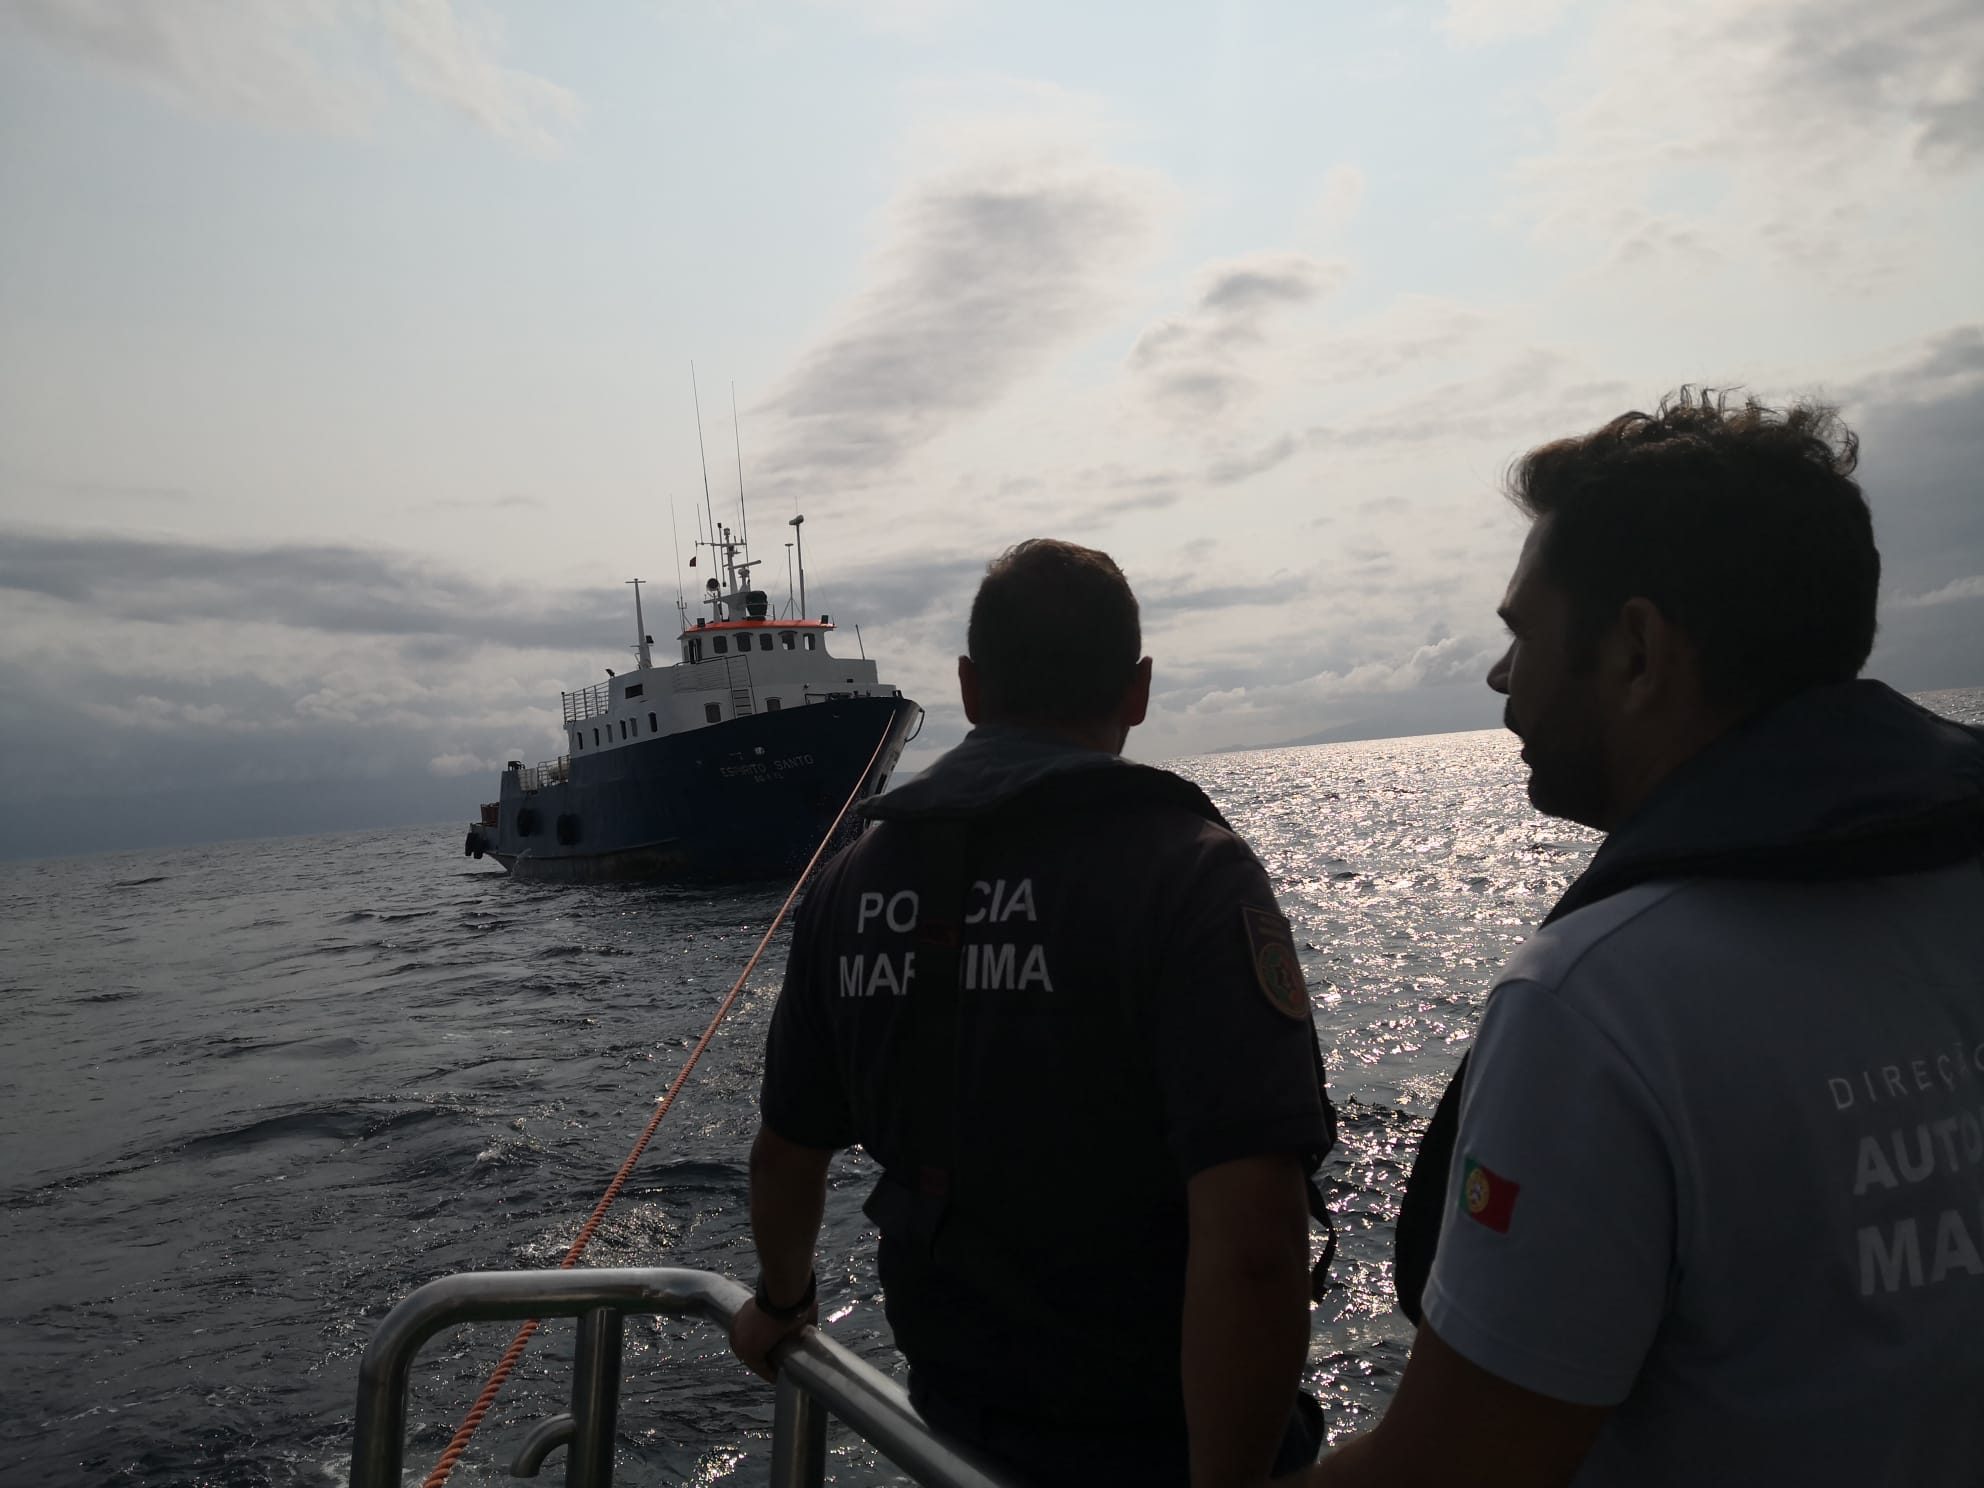 Resgatado navio de comércio com sete tripulantes à deriva ao largo da ilha de São Jorge